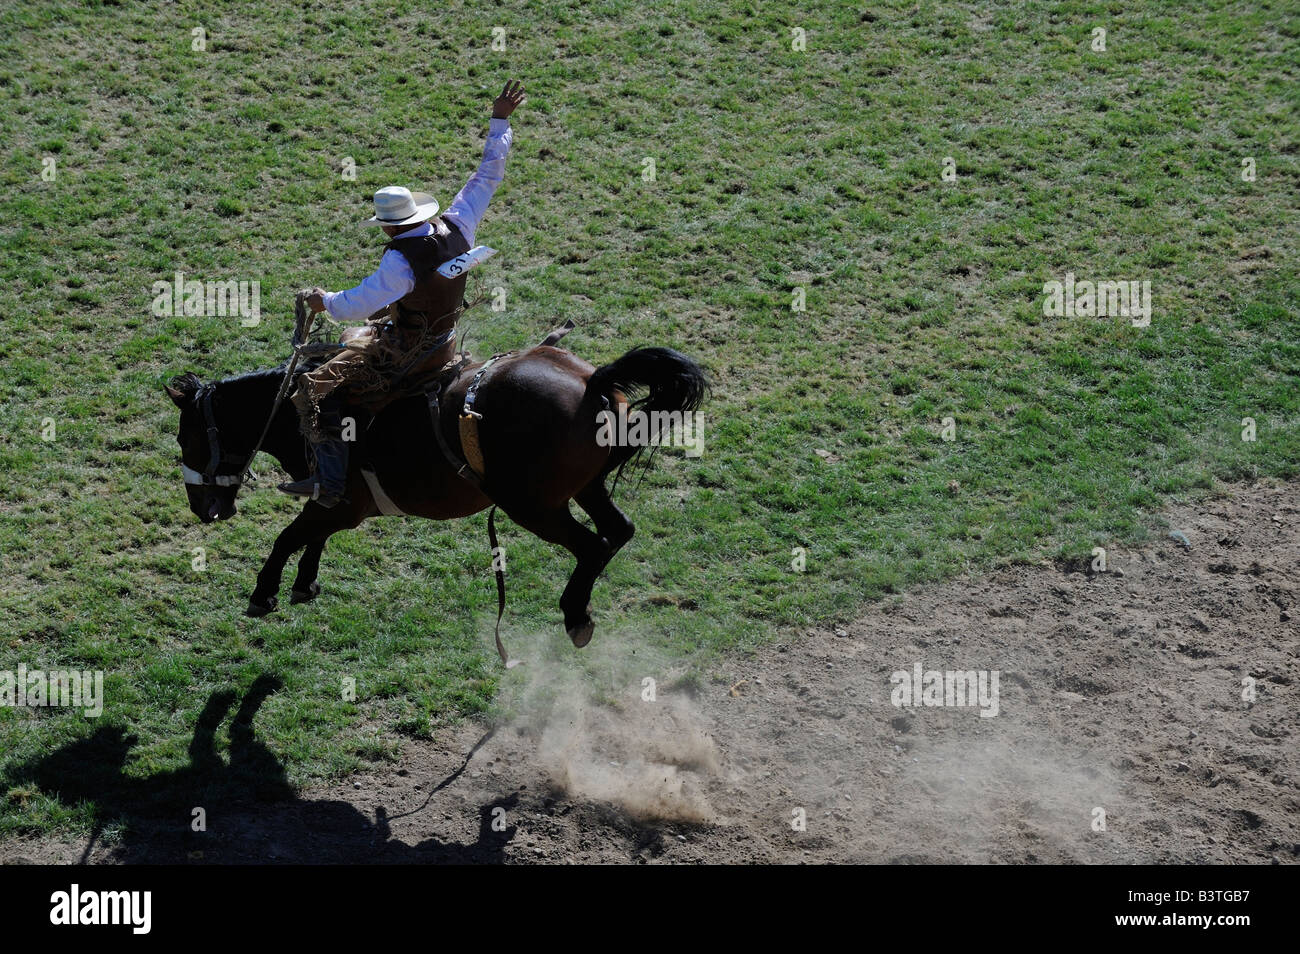 American Cowboy professionnel équitation selle tronçonnage bronco dans l'air wild ride cheval blanc caucasien wiley difficiles Banque D'Images